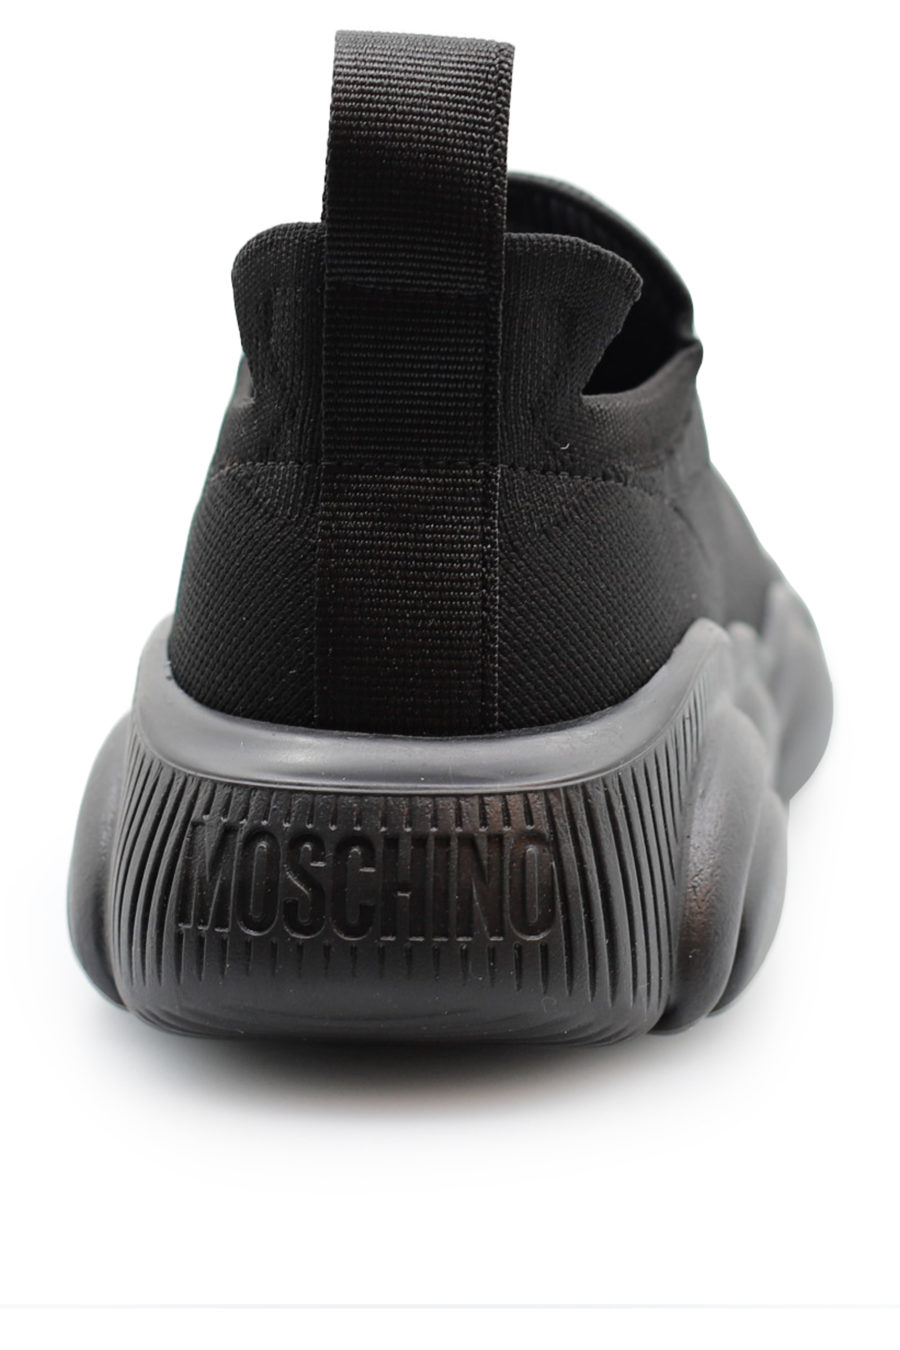 Zapatillas negras sin cordones con logo blanco - d8bfccbe99c8d1fe638f4680cab344394d52ed4b